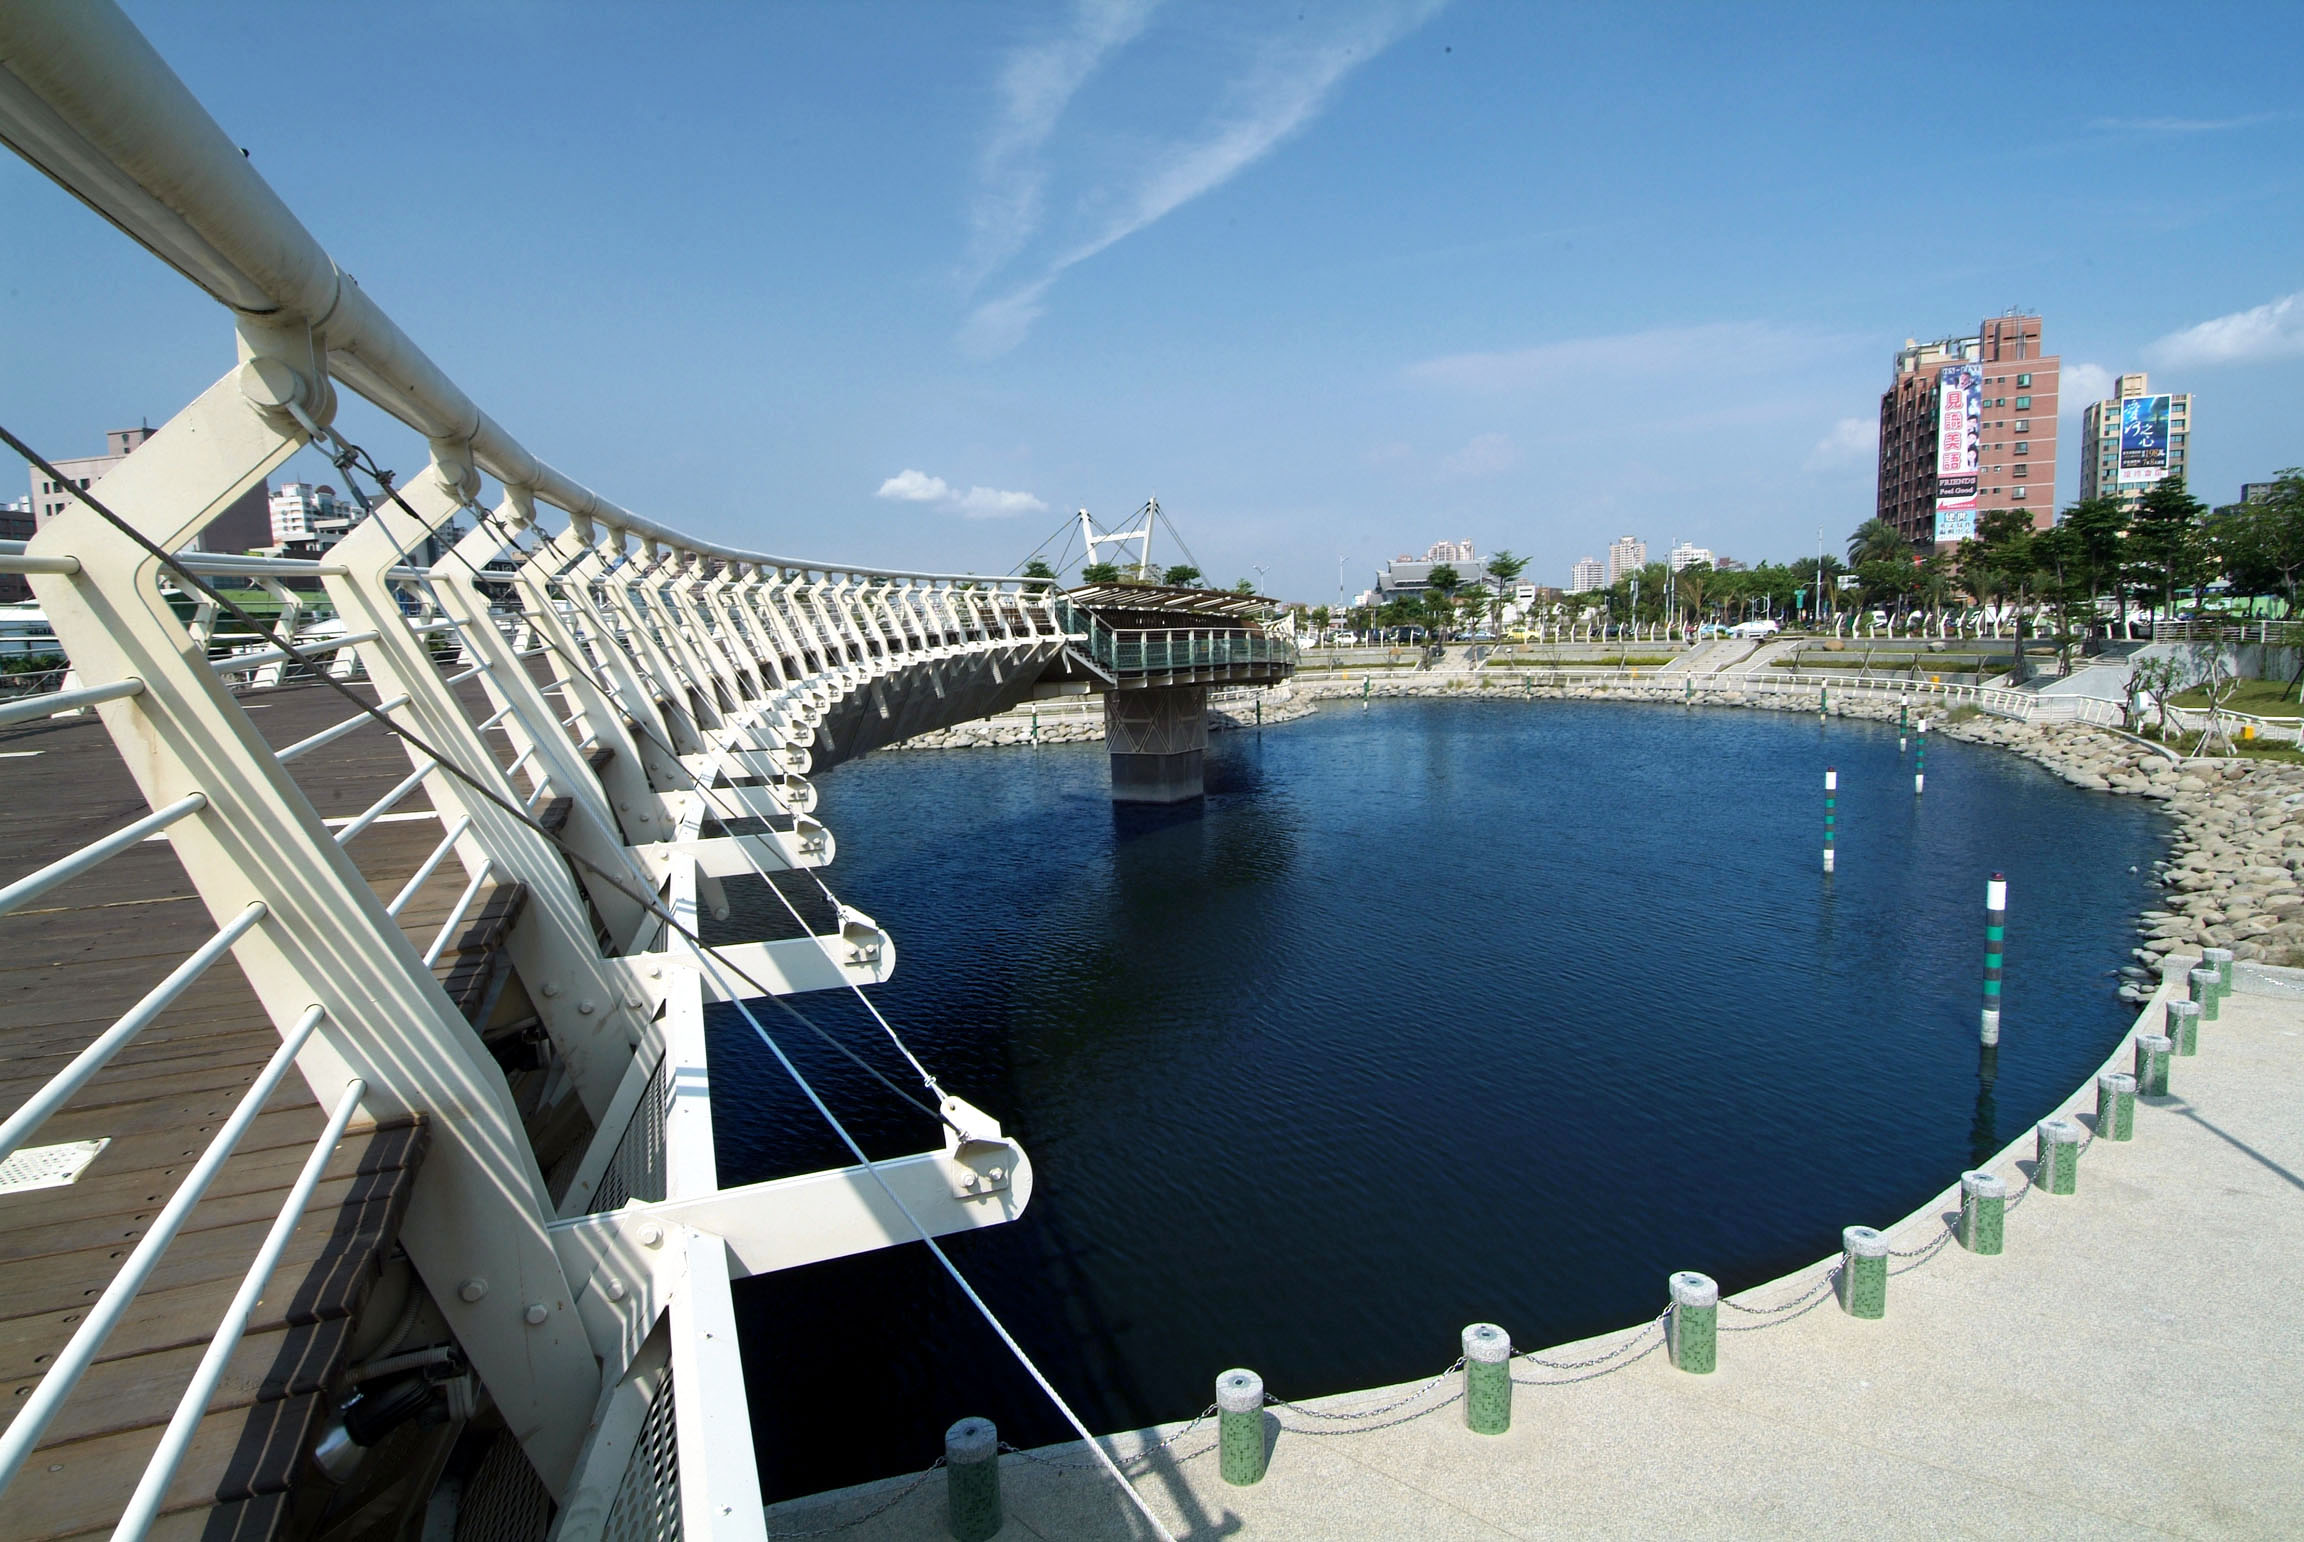 高雄市污水下水道用戶接管率已逾54%，愛河沿岸的接管率更是接近100%，大幅改善愛河水質。(圖/鮑忠暉攝)